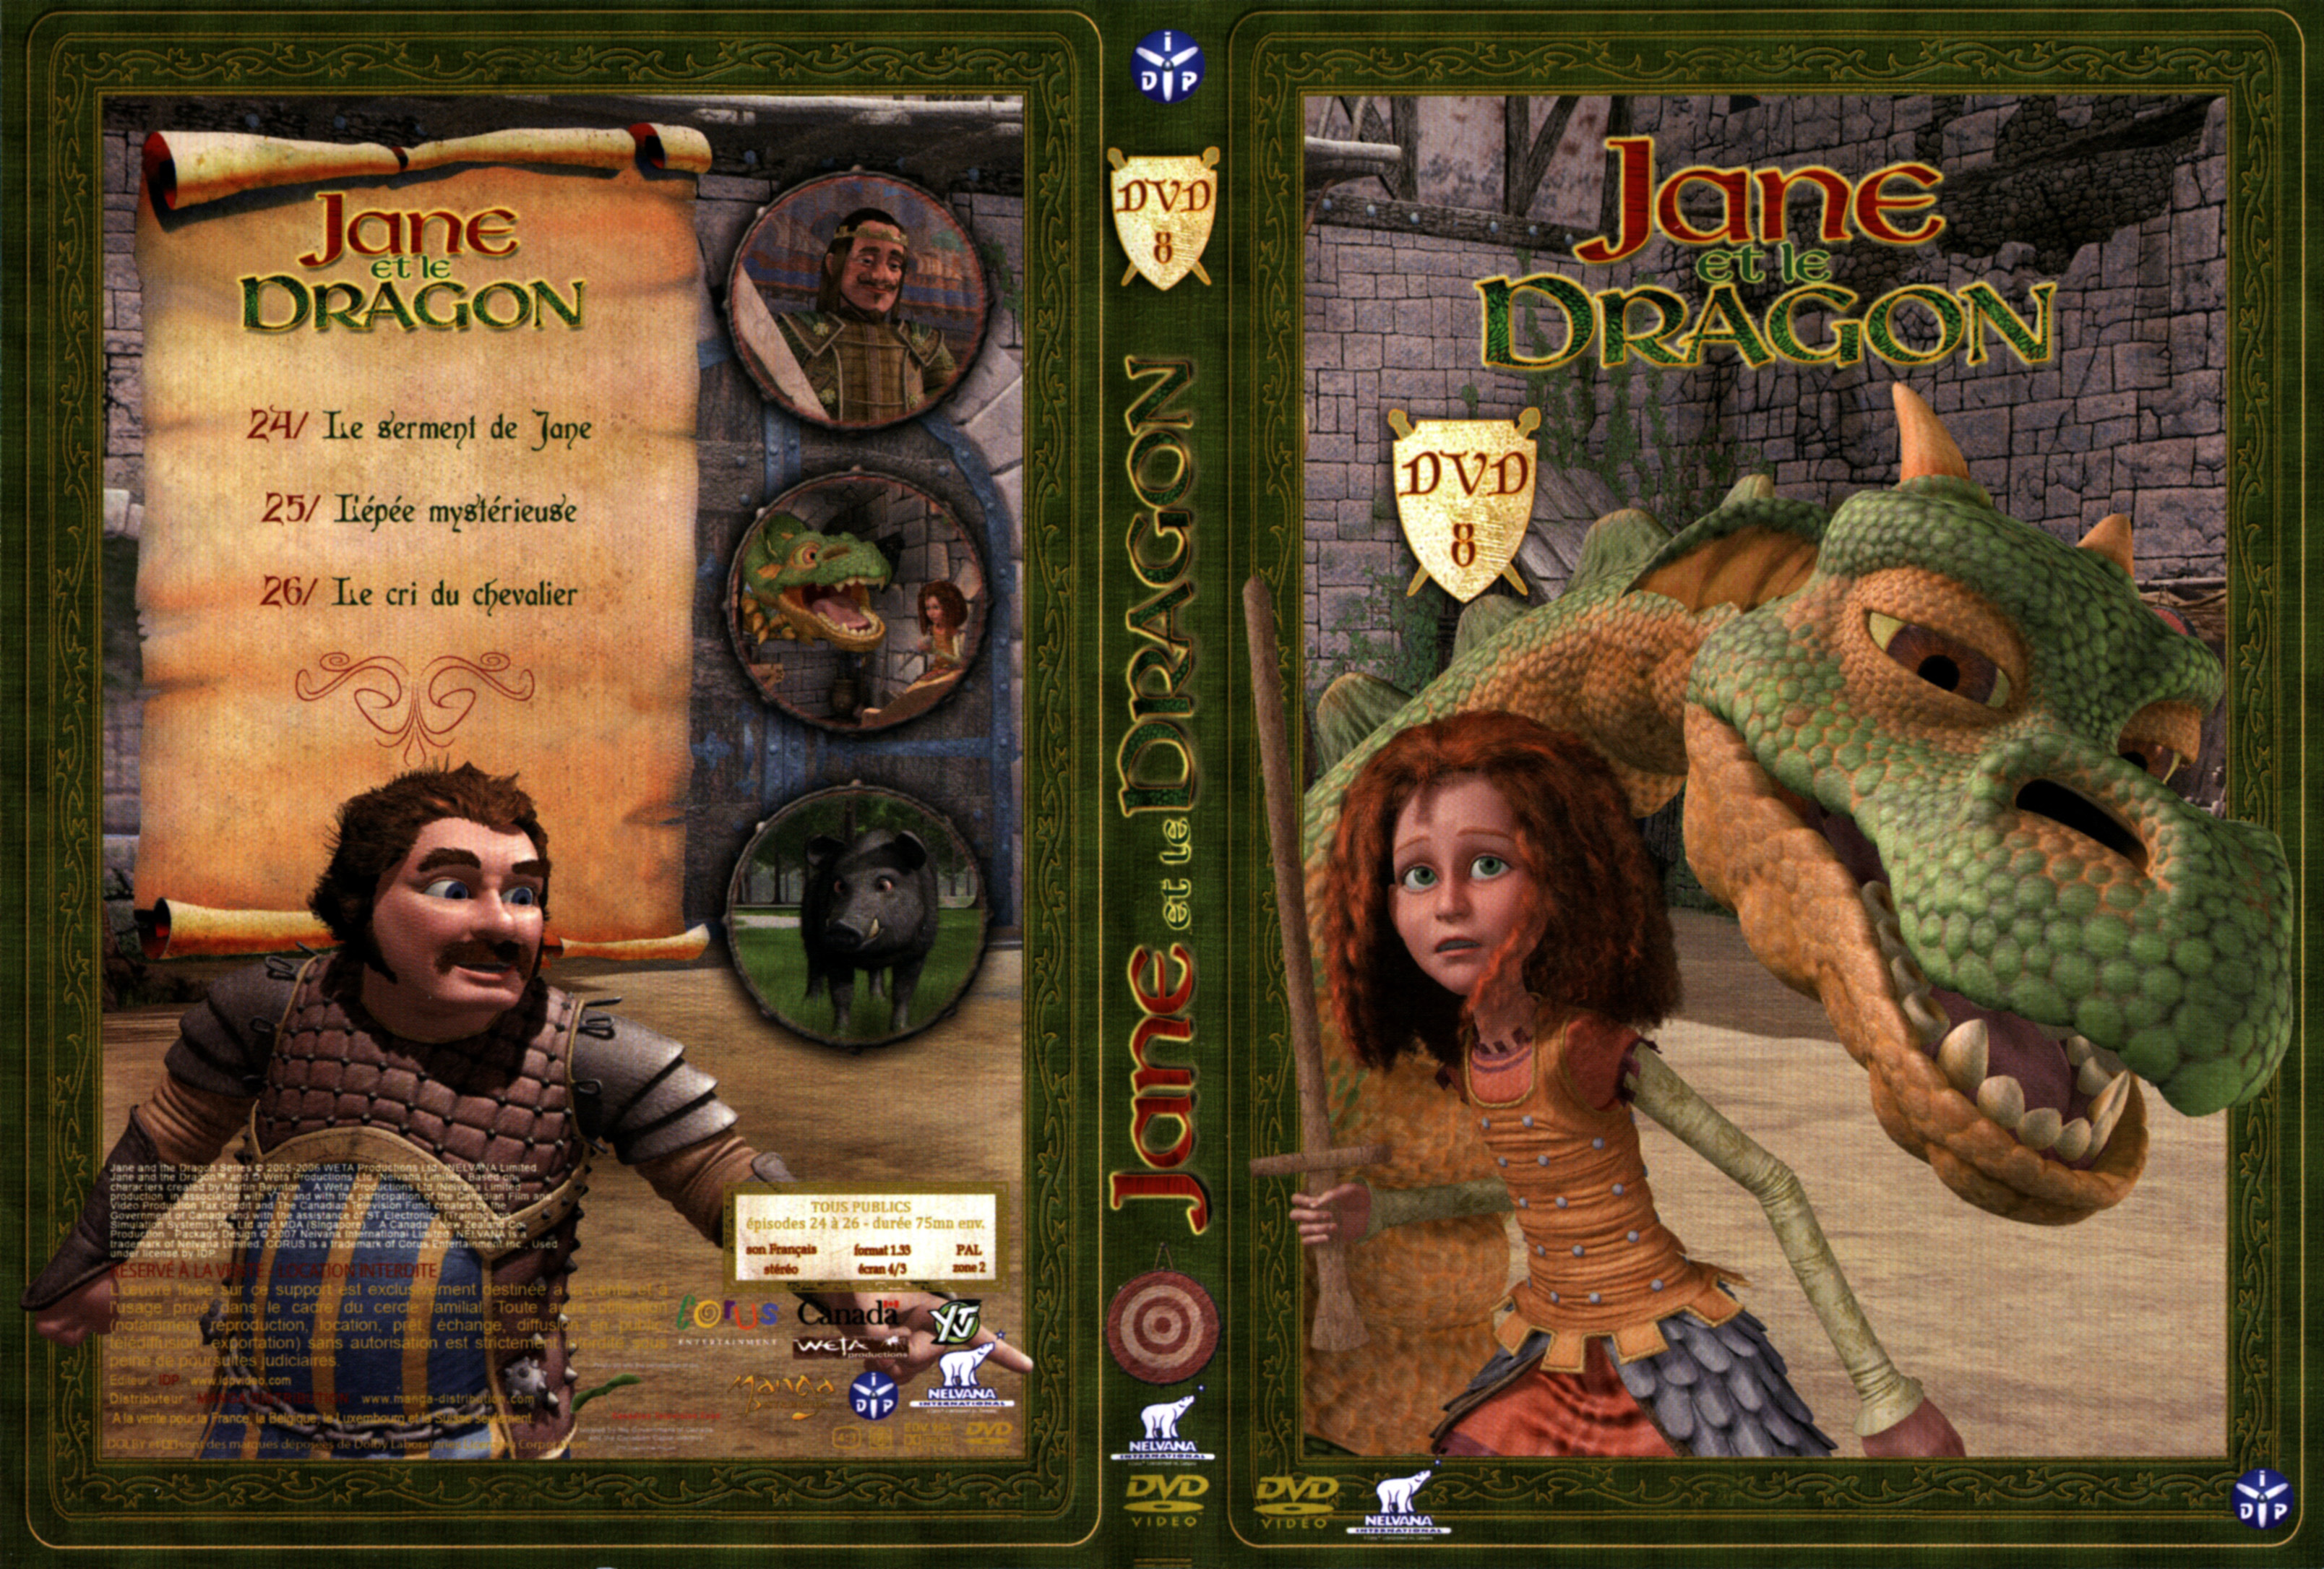 Jaquette DVD Jane et le Dragon vol 8